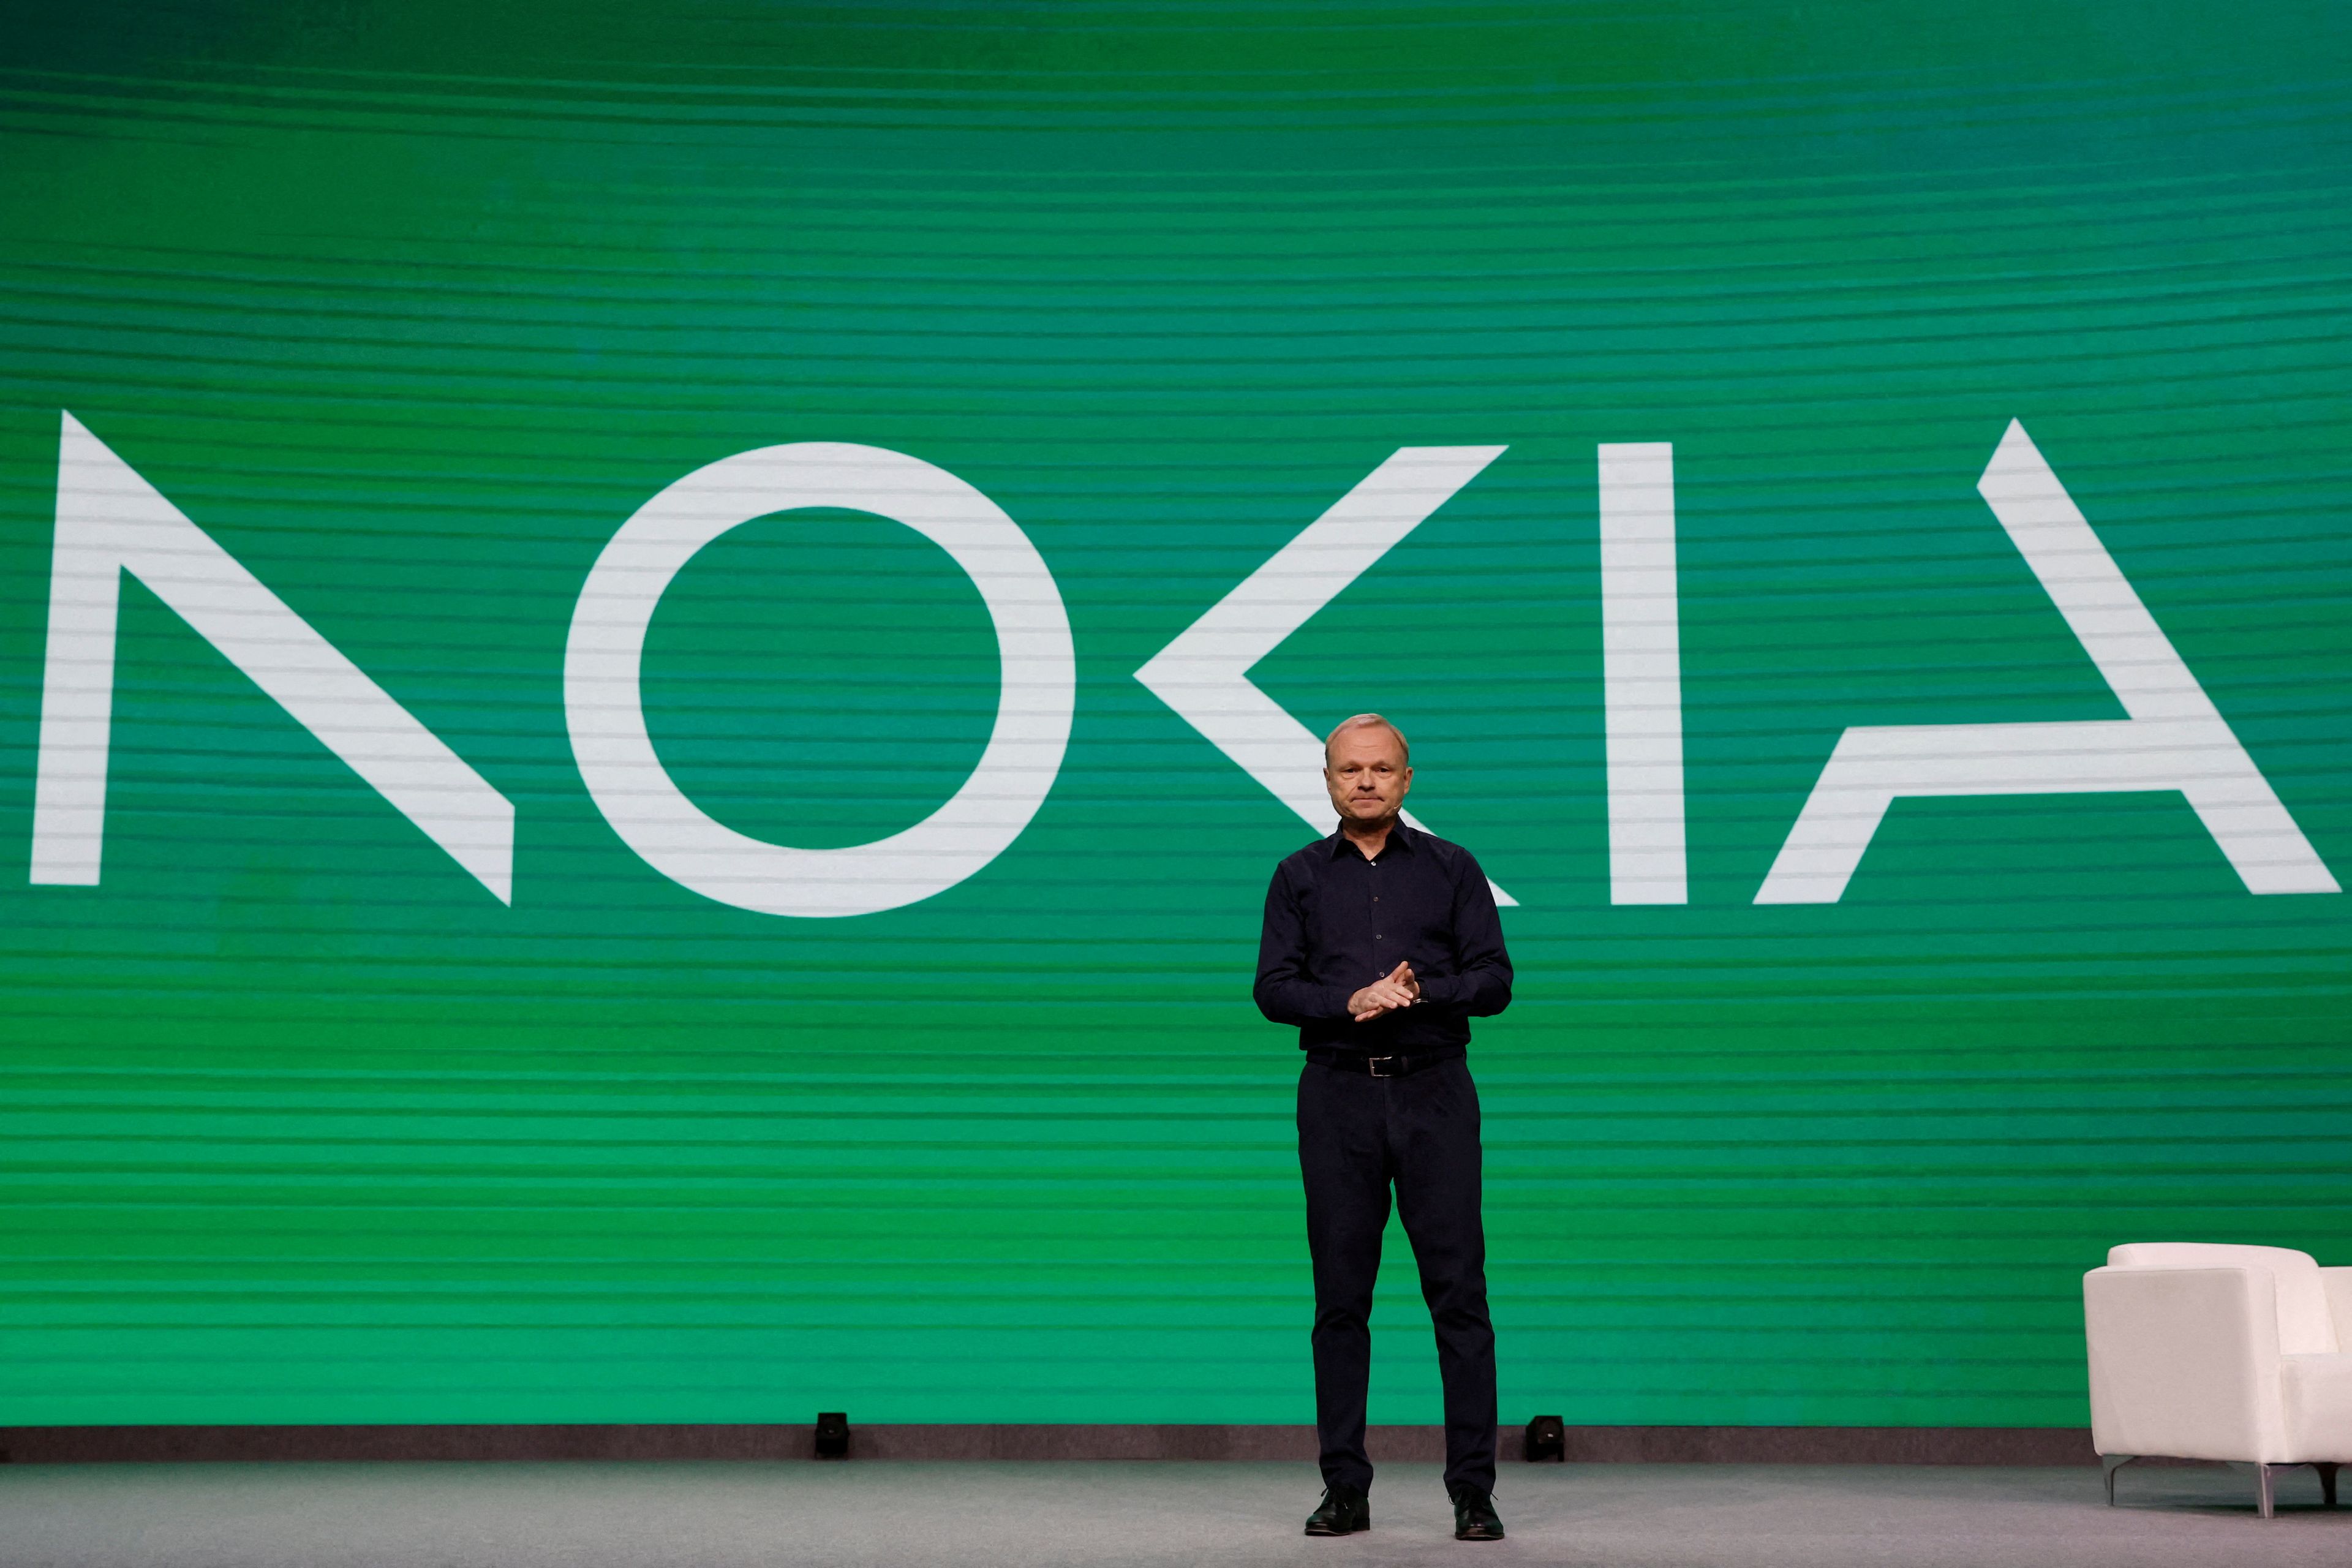 Pekka Lundmark, presidente y consejero delegado de Nokia